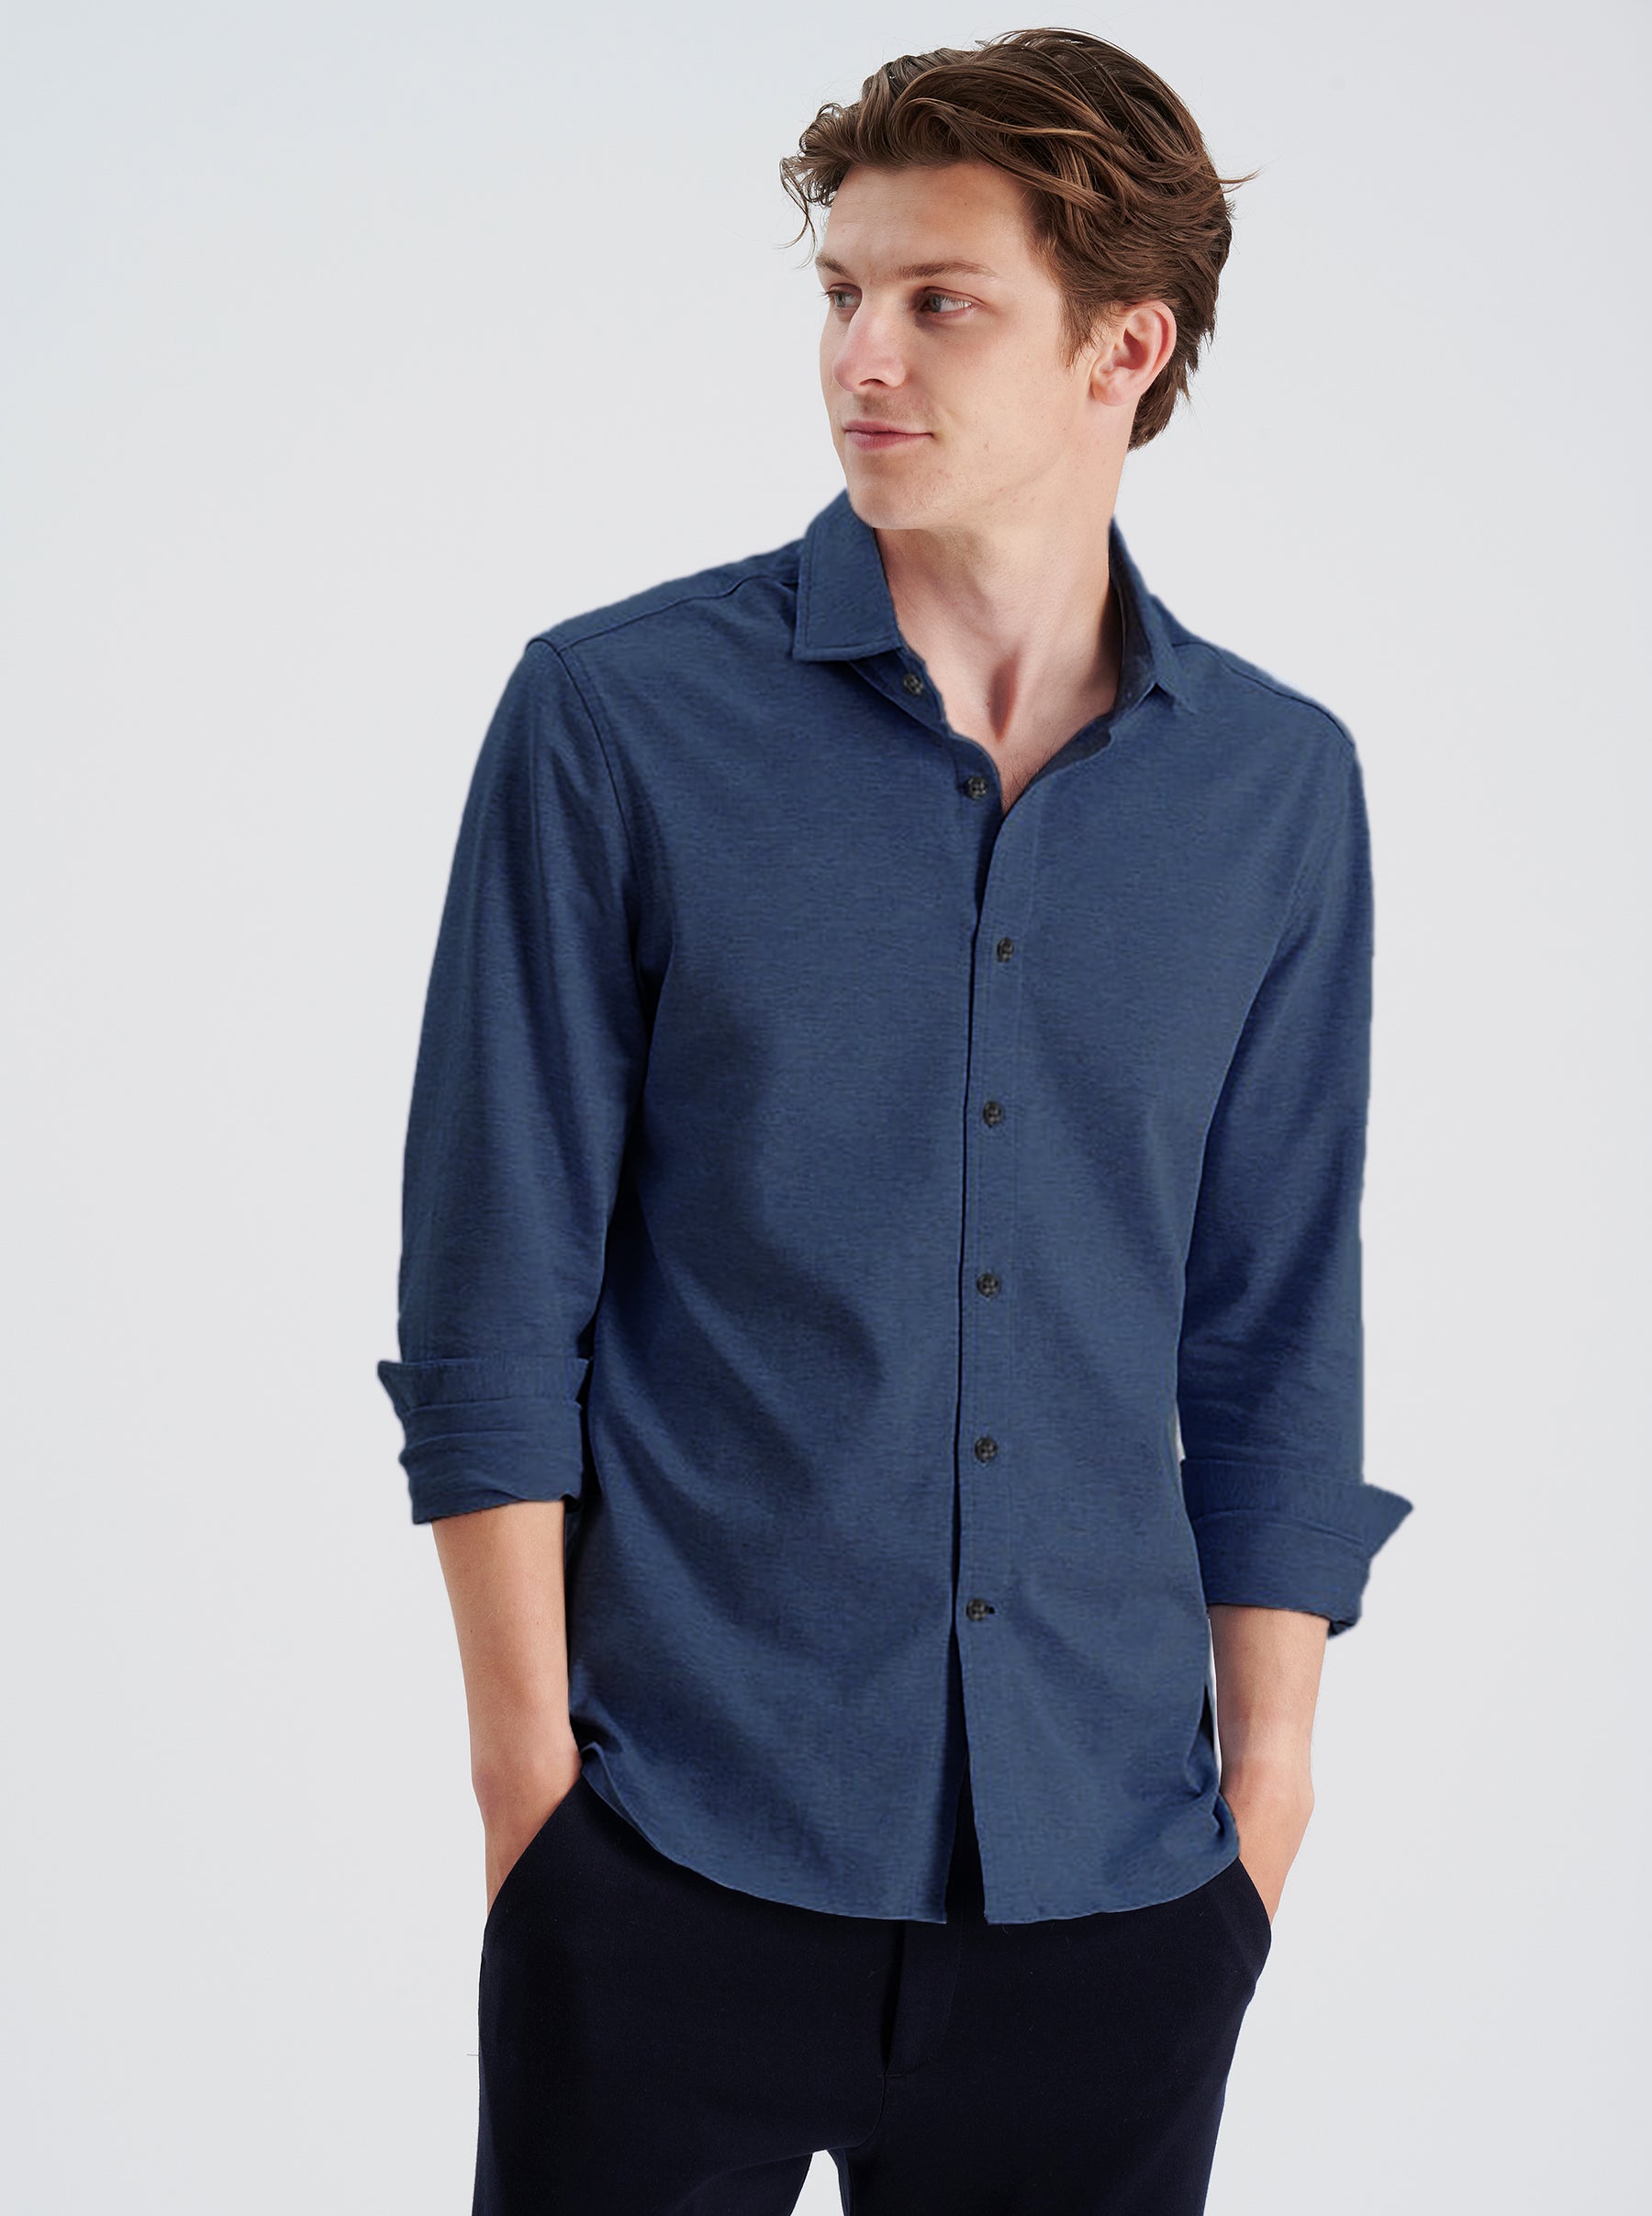 Long Sleeve Knit Shirt, Slim Fit Button Down Men\'s Shirt, 100% Cotton,  NiceStuff